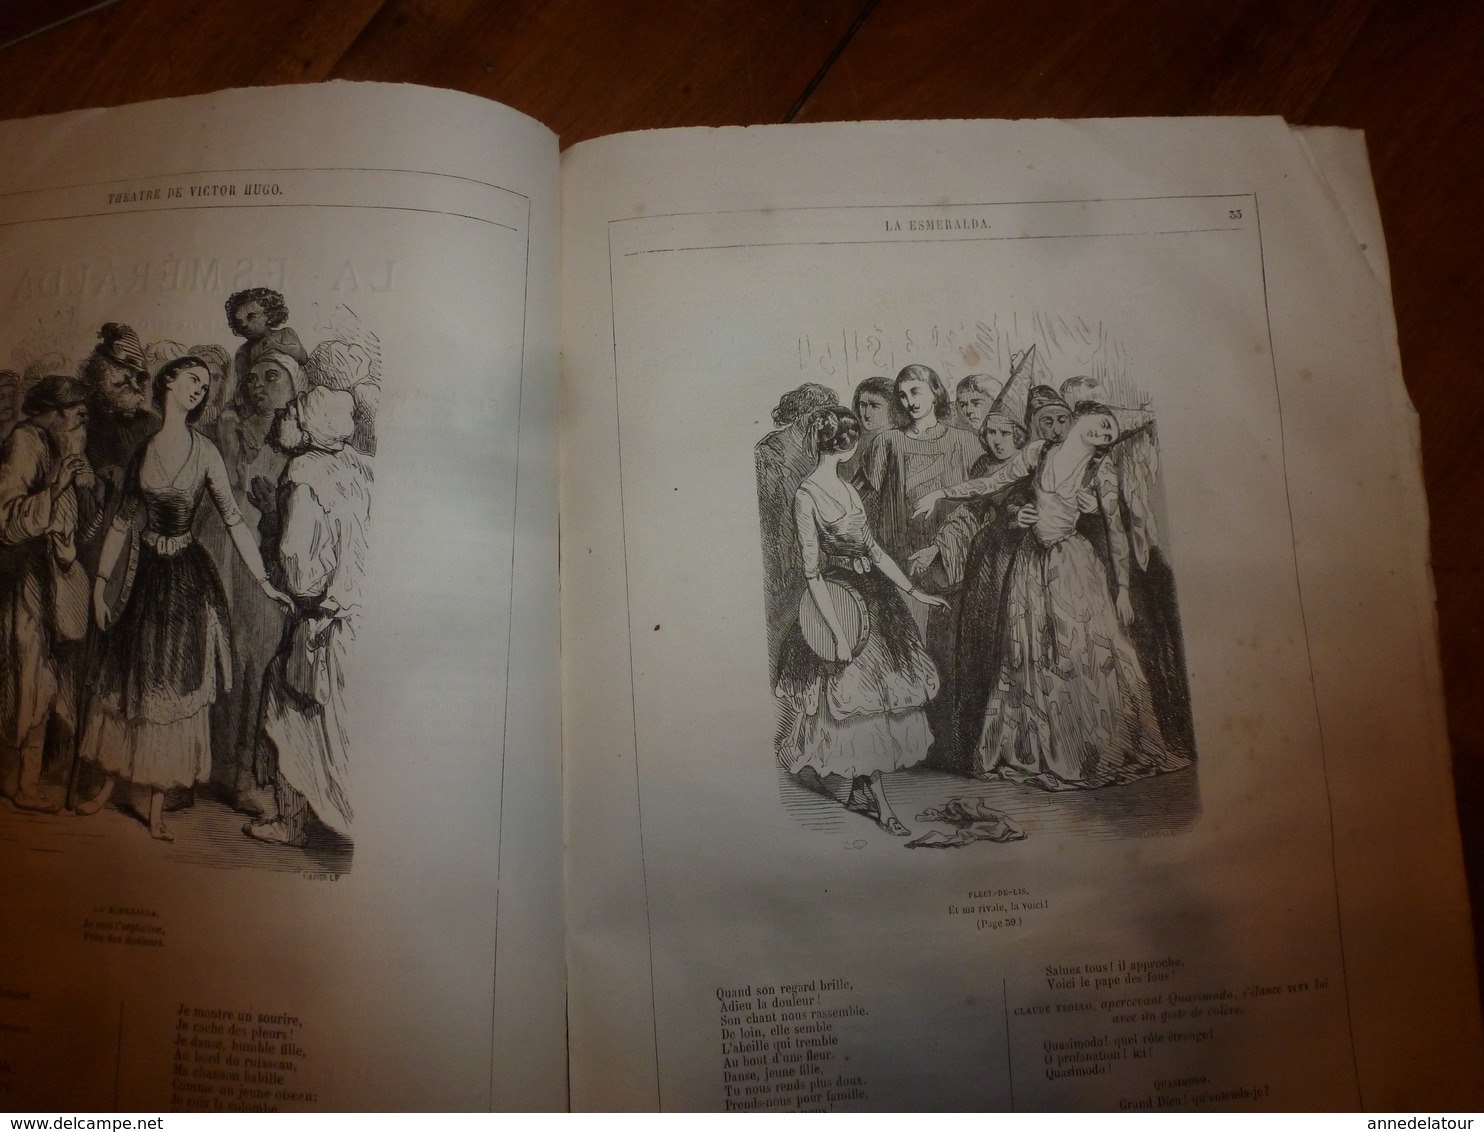 MARIE TUDOR -La Esmeralda ,par Victor Hugo -18 dessins par Foulquier,G. Séguin et Riou - Edition J. Hetzel (ill Beaucé)